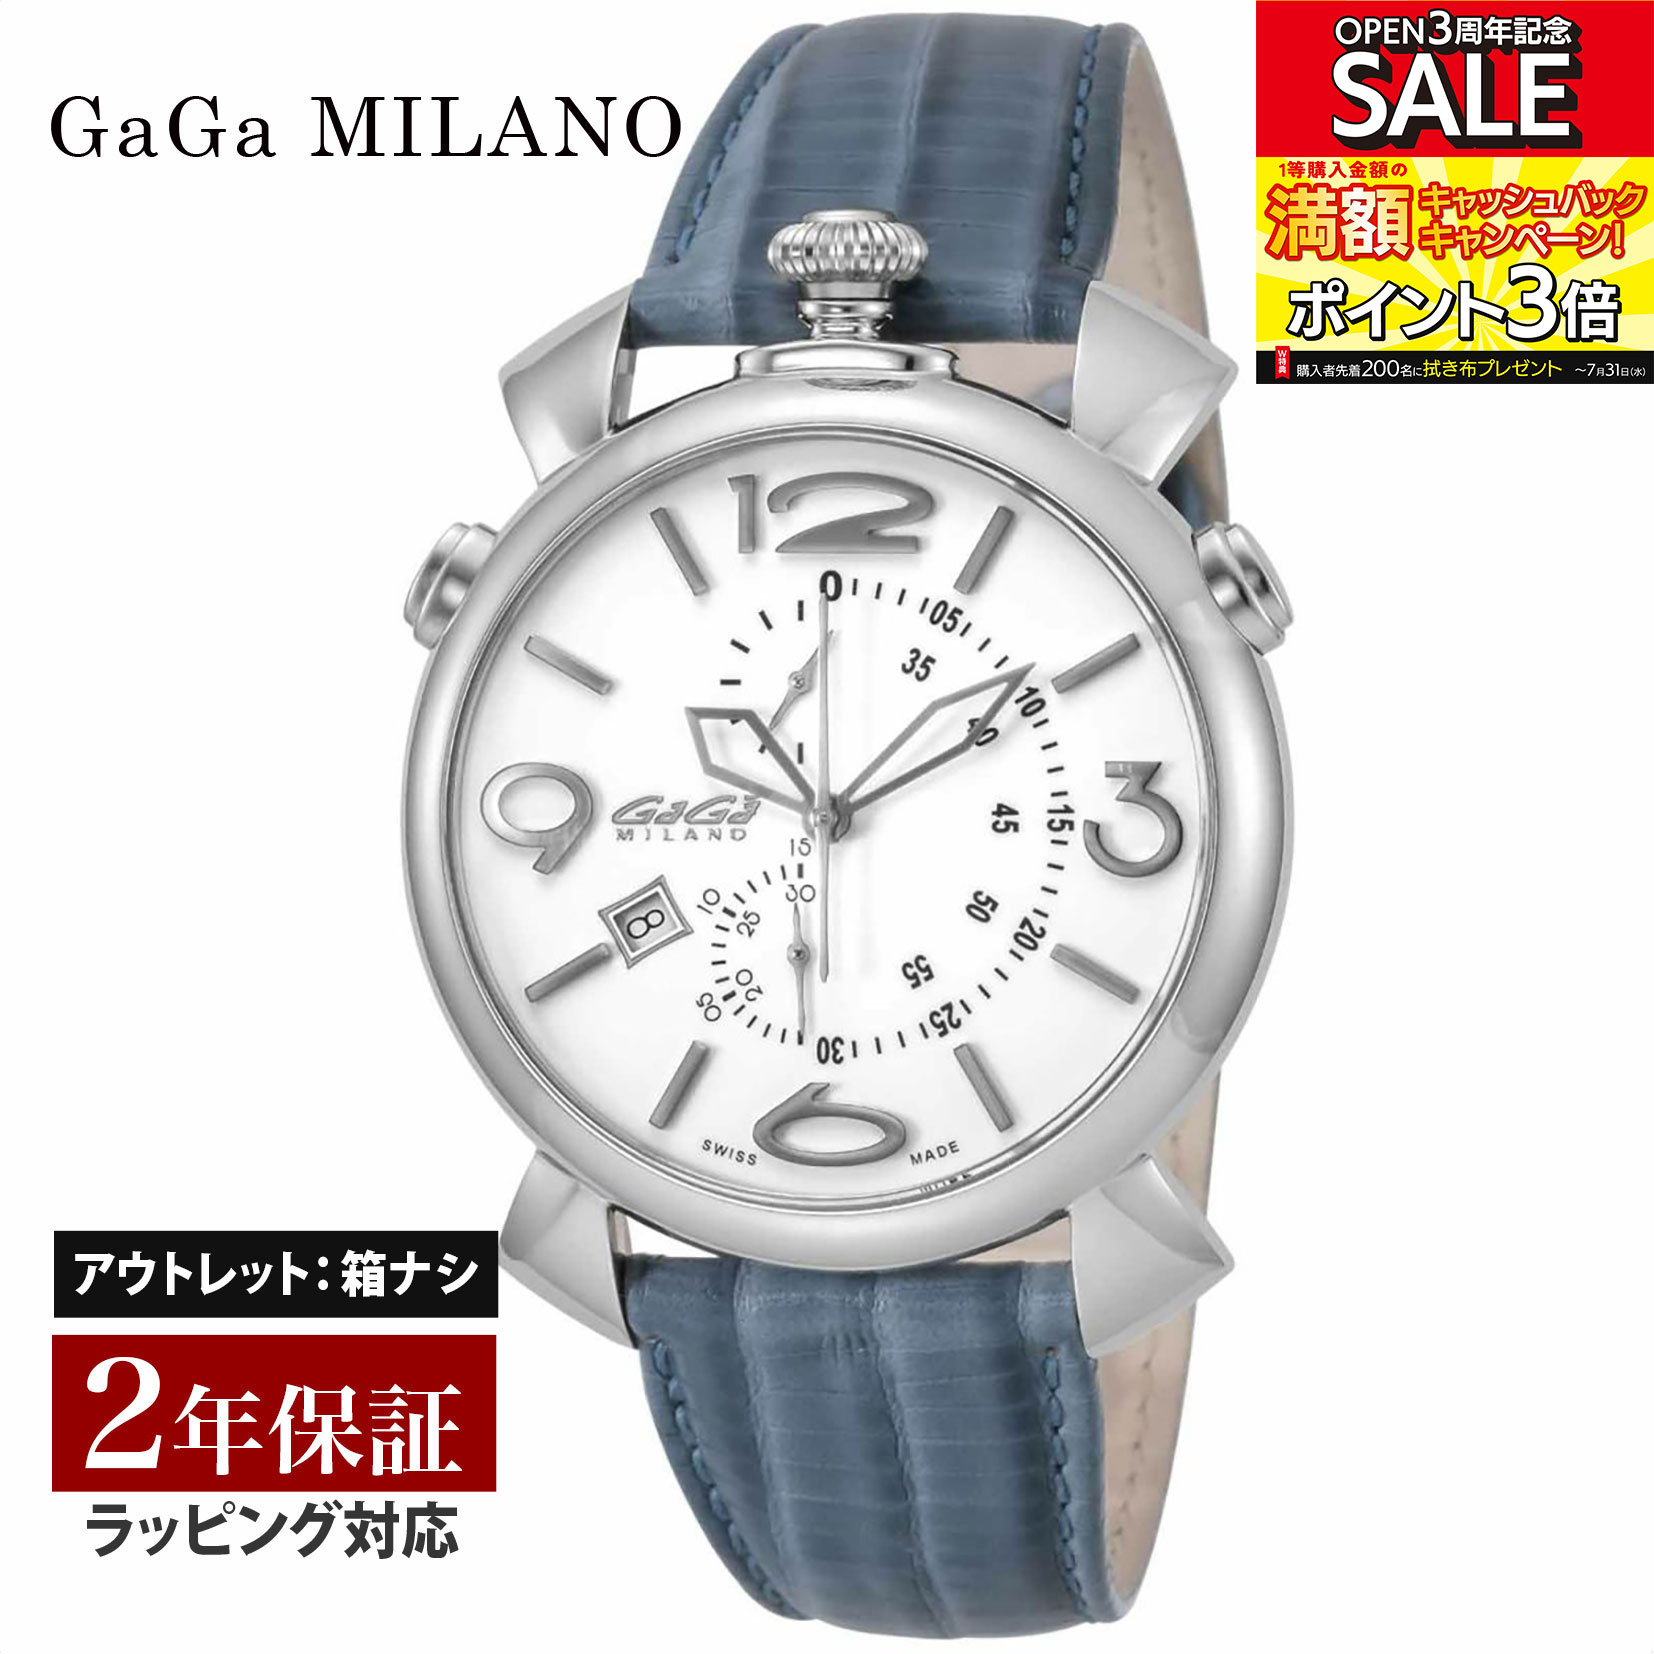 【クリアランスSALE】 GaGaMILAN ガガミラノ THINCHRONO46MM クォーツ メンズ ホワイト 5097.02BJ-NEW-N 腕時計 高級腕時計 ブランド 